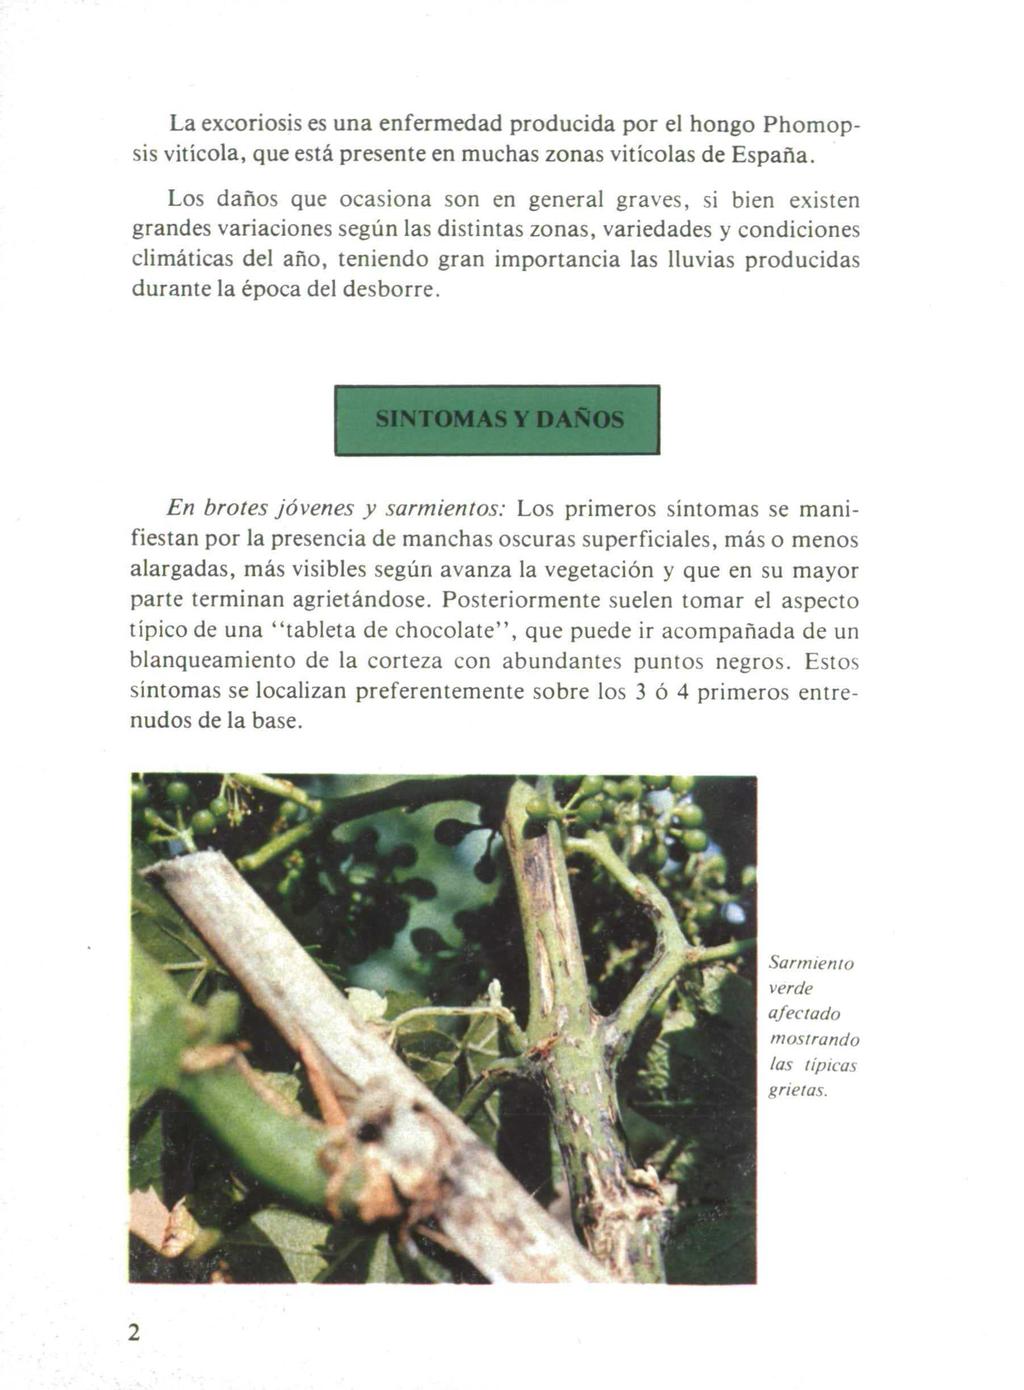 La excoriosis es una enfermedad producida por el hongo Phomopsis vitícola, que está presente en muchas zonas vitícolas de España.